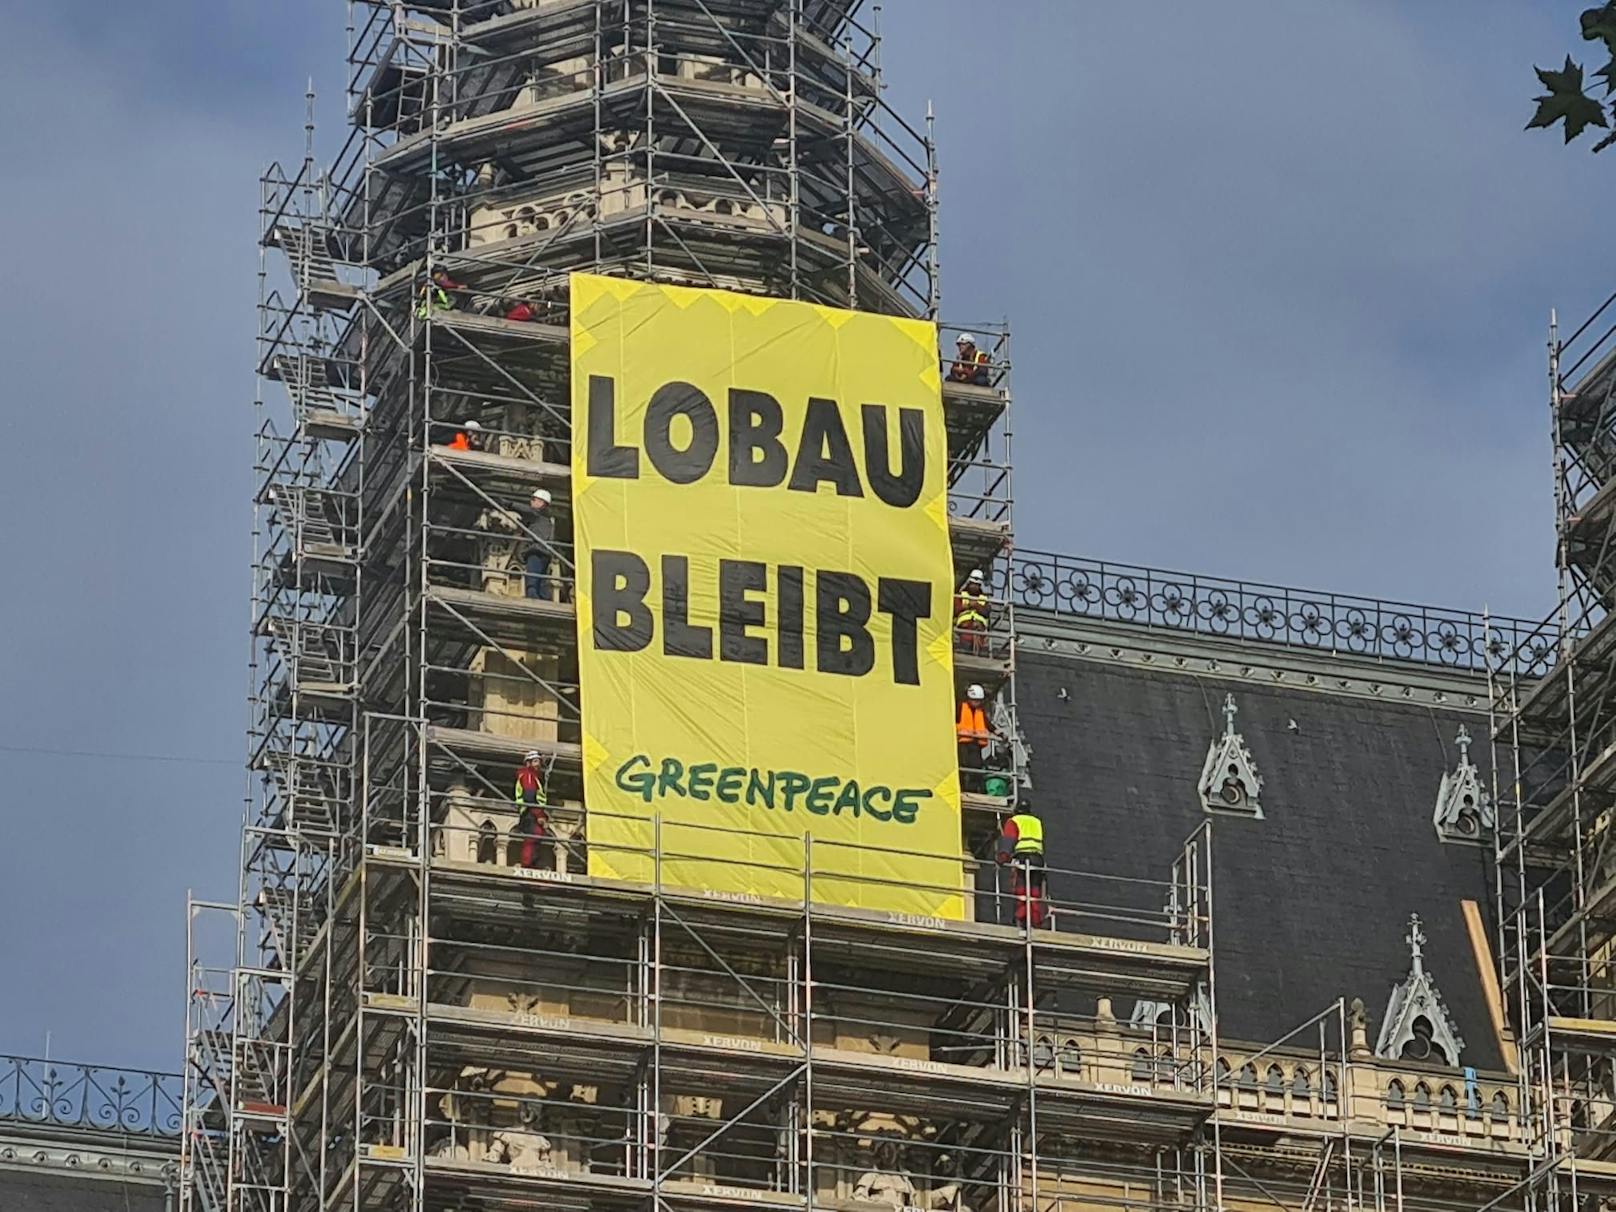 Aktivisten der Umweltschutzorganisation Greenpeace besetzen seit heute Morgen das Wiener Rathaus, um gegen das Straßenprojekt Lobau-Autobahn zu protestieren.